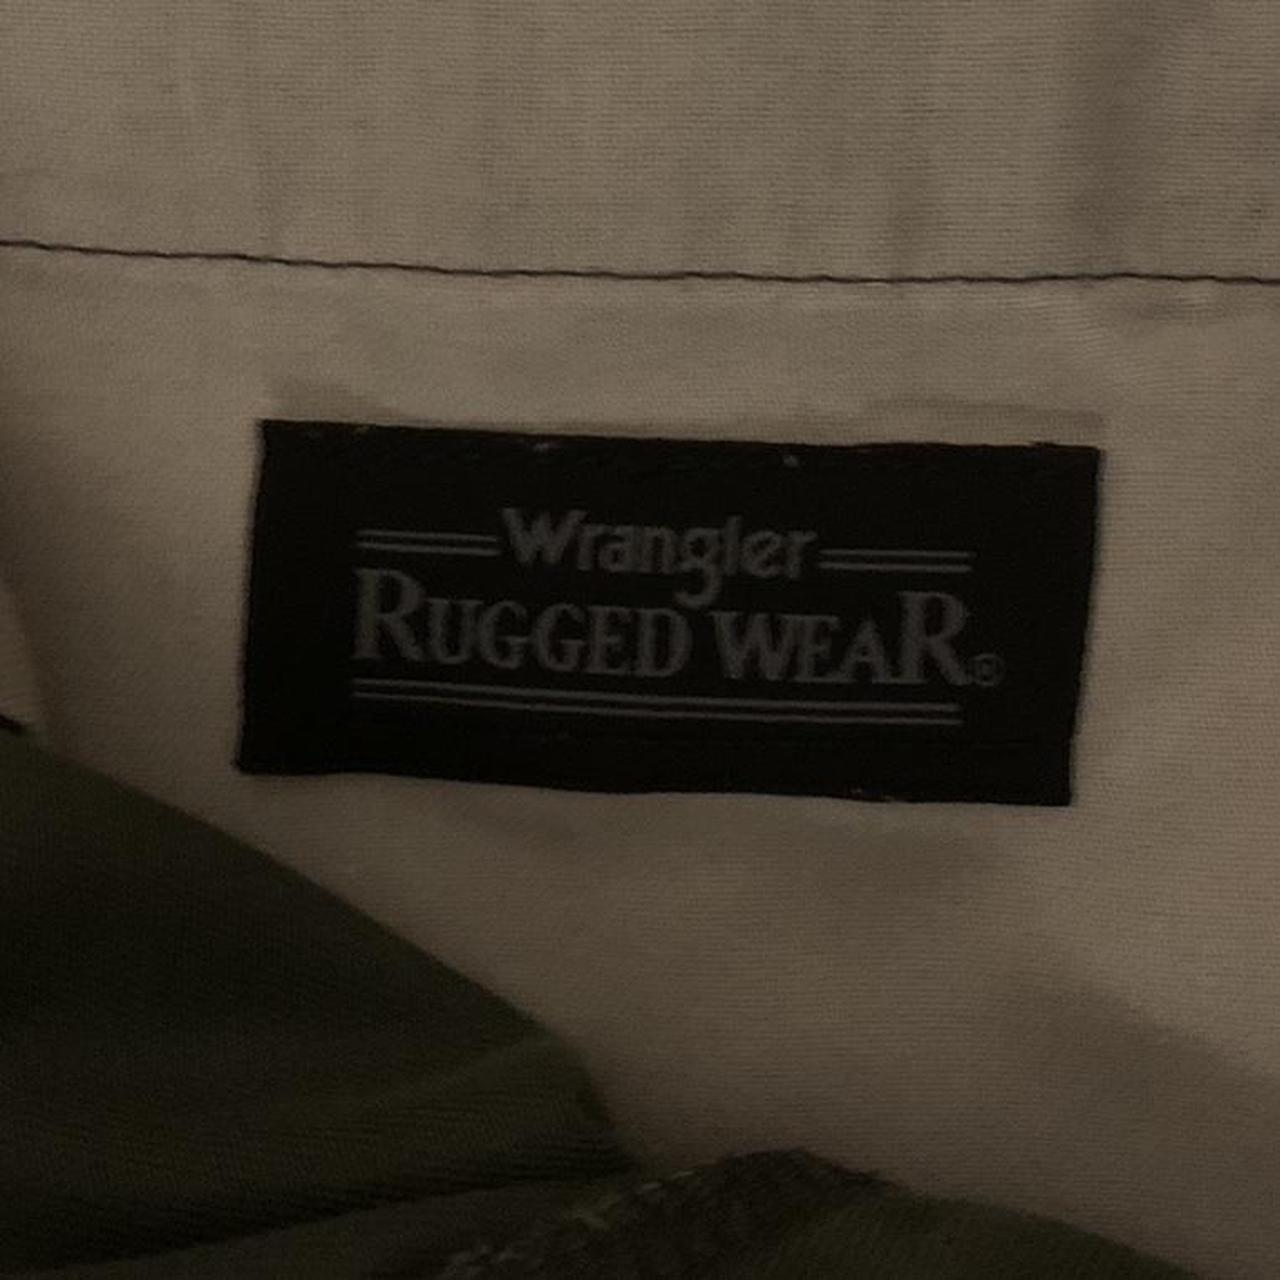 Wrangler Rugged Wear dress slacks in olive, I love... - Depop